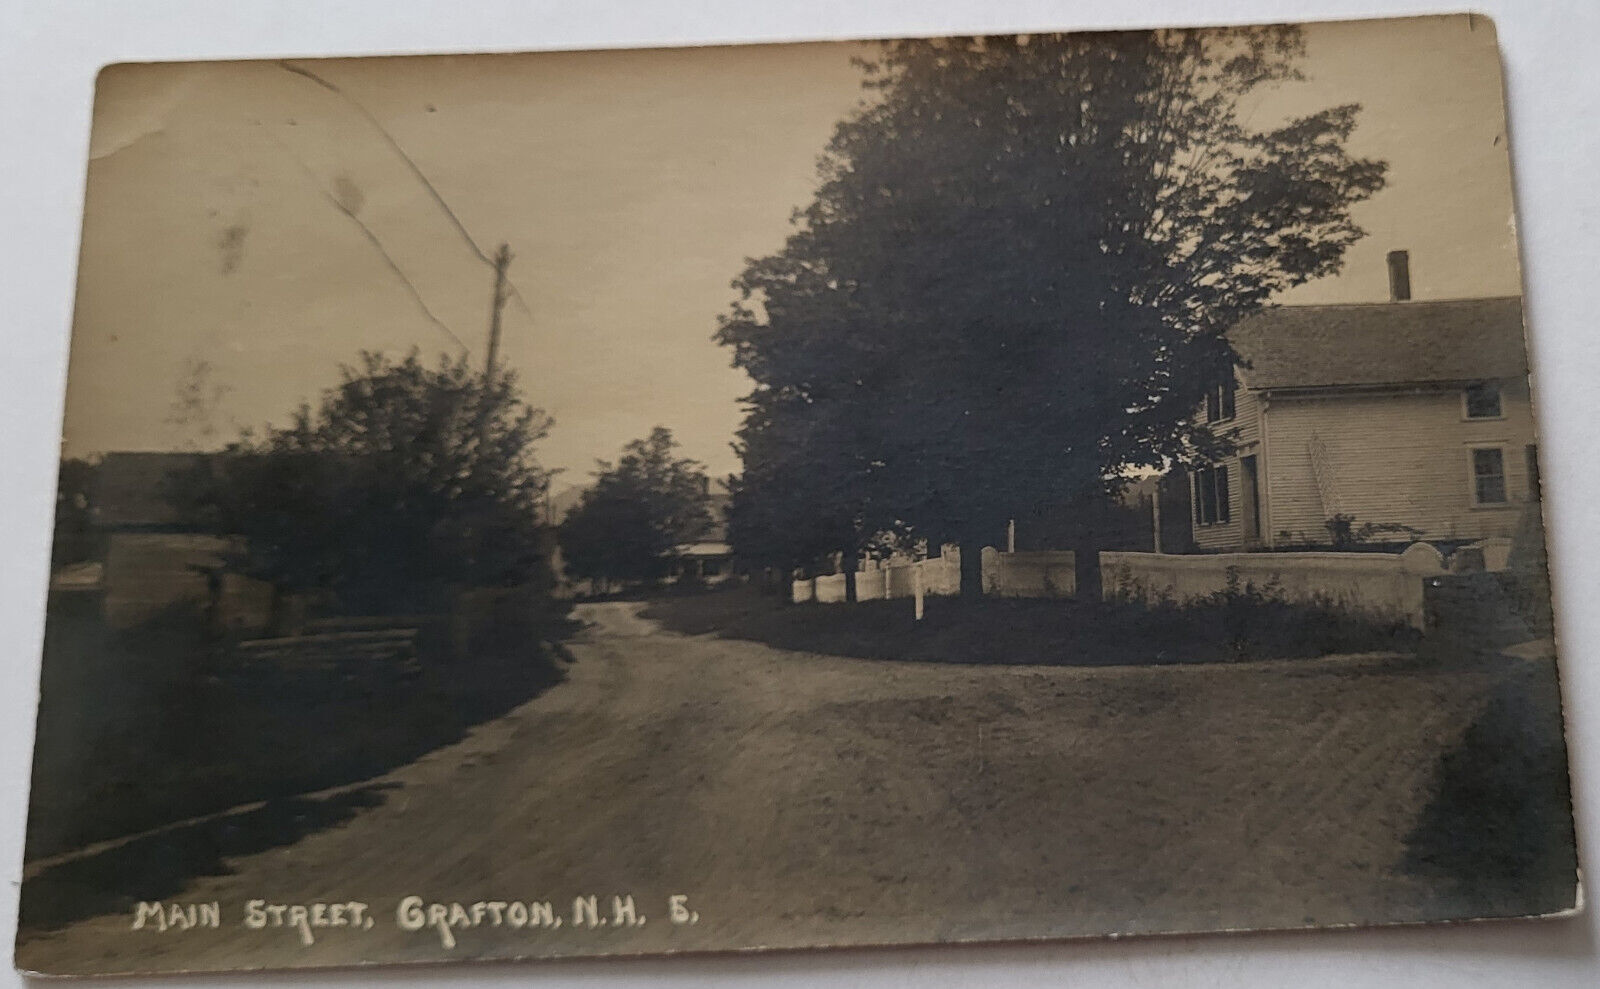 C 1910 RPPC MAIN STREET GRAFTON NH GREEK REVIVAL HOME FARMHOUSE RURAL SCENE